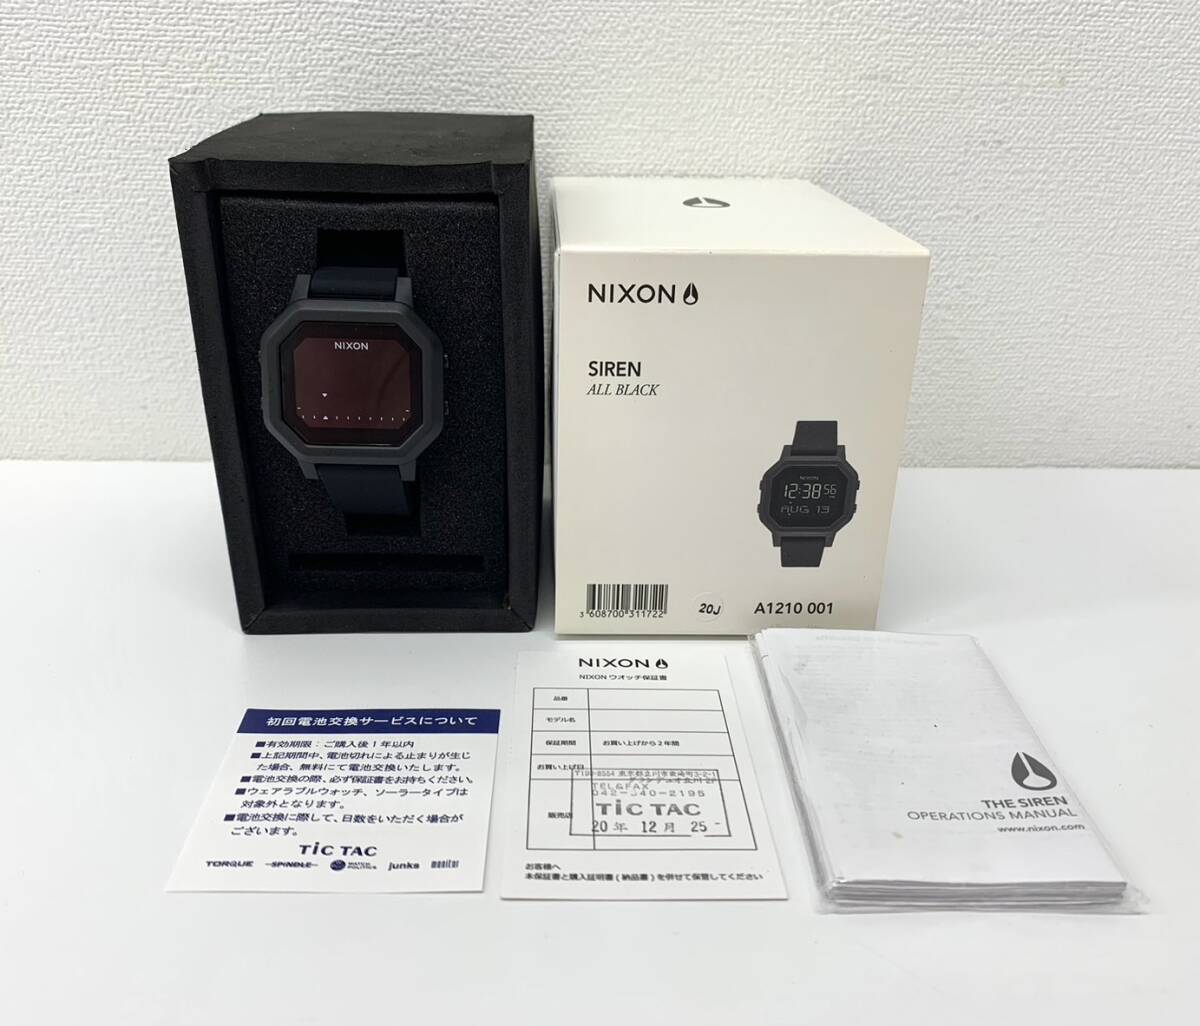  безопасность сделка [ daikokuya магазин ]*NIXON Nixon SIREN сирена ALL BLACK A1210 001* принадлежности ( коробка руководство пользователя ) женский цифровой датчик времени наручные часы часы 